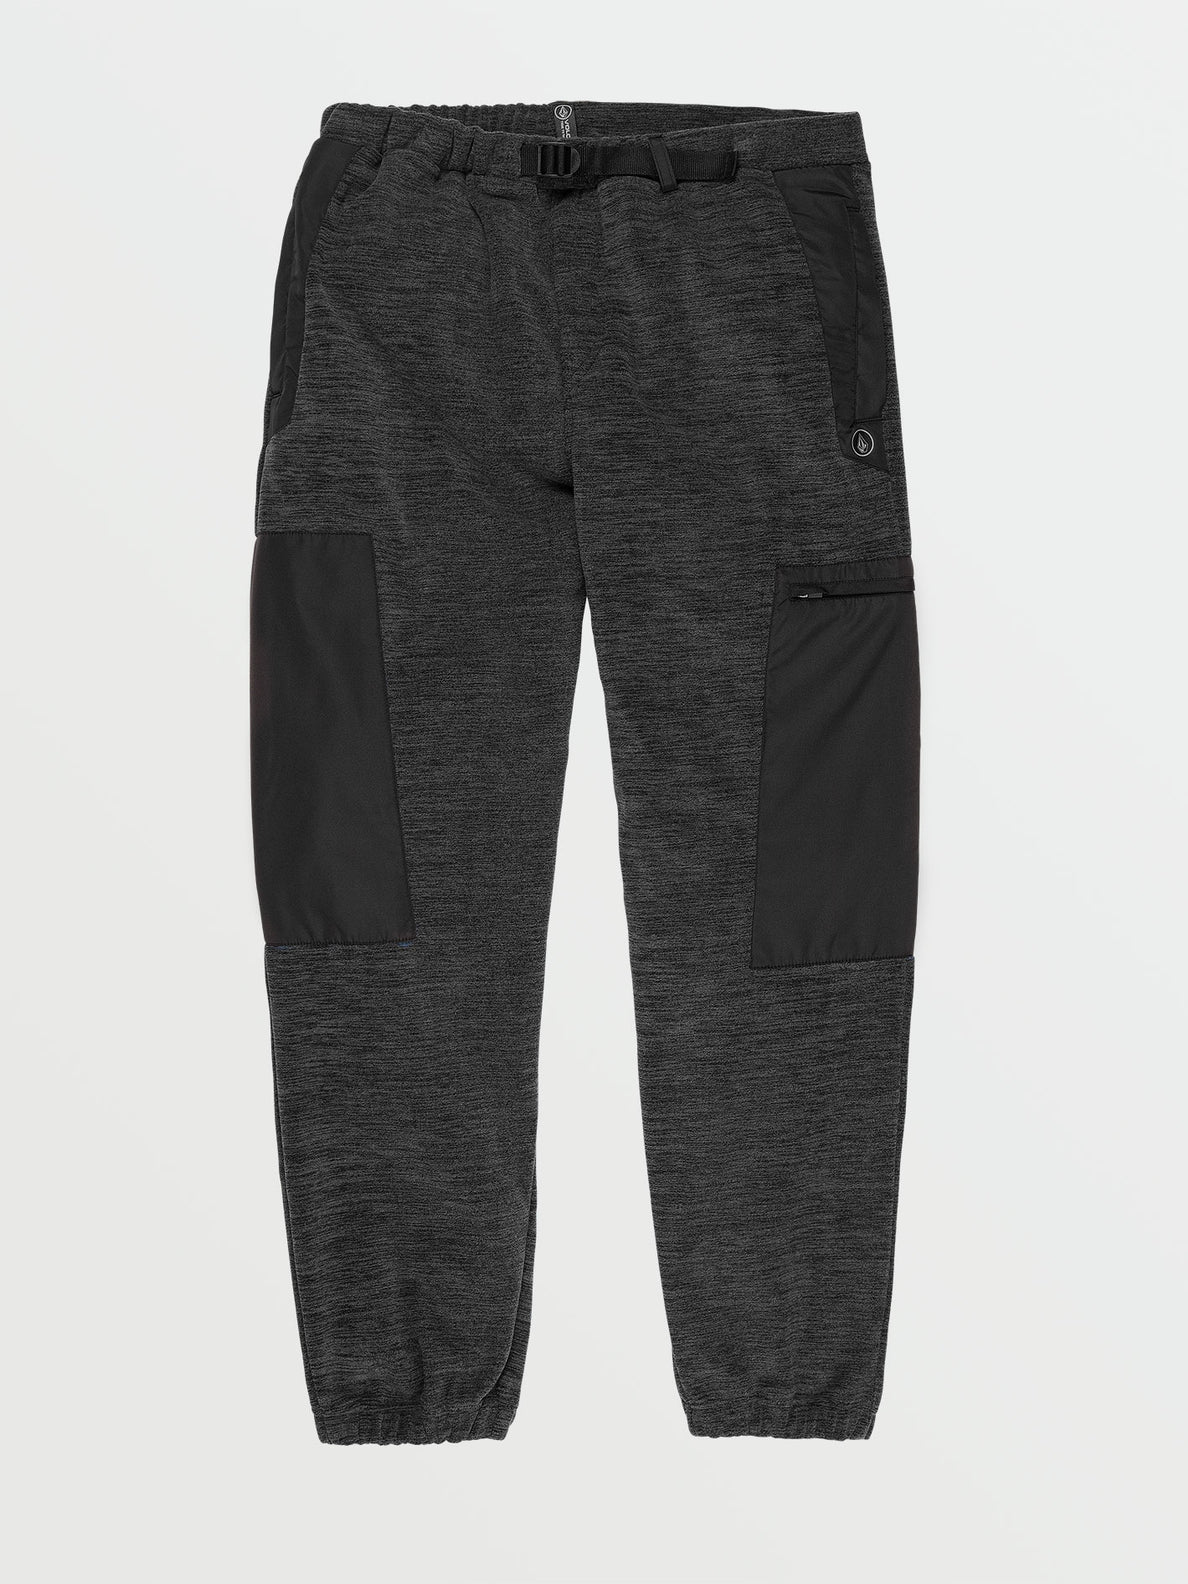 Yzzolater Fleece Pants - Black (A1242100_BLK) [F]